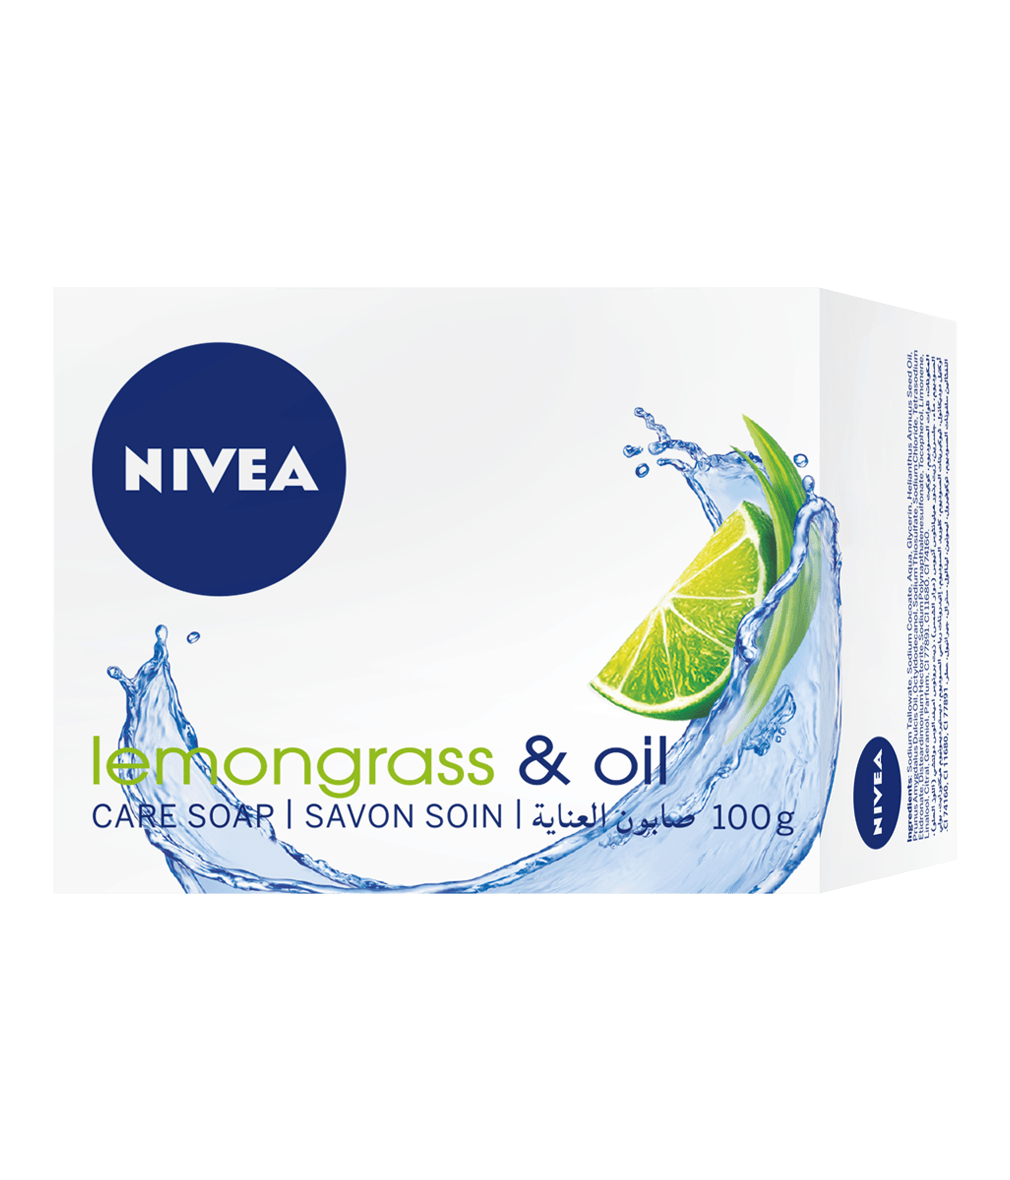 80698 NIVEA Lemongrass & Oil Bar Soap 100g clean packshot bi-lingual